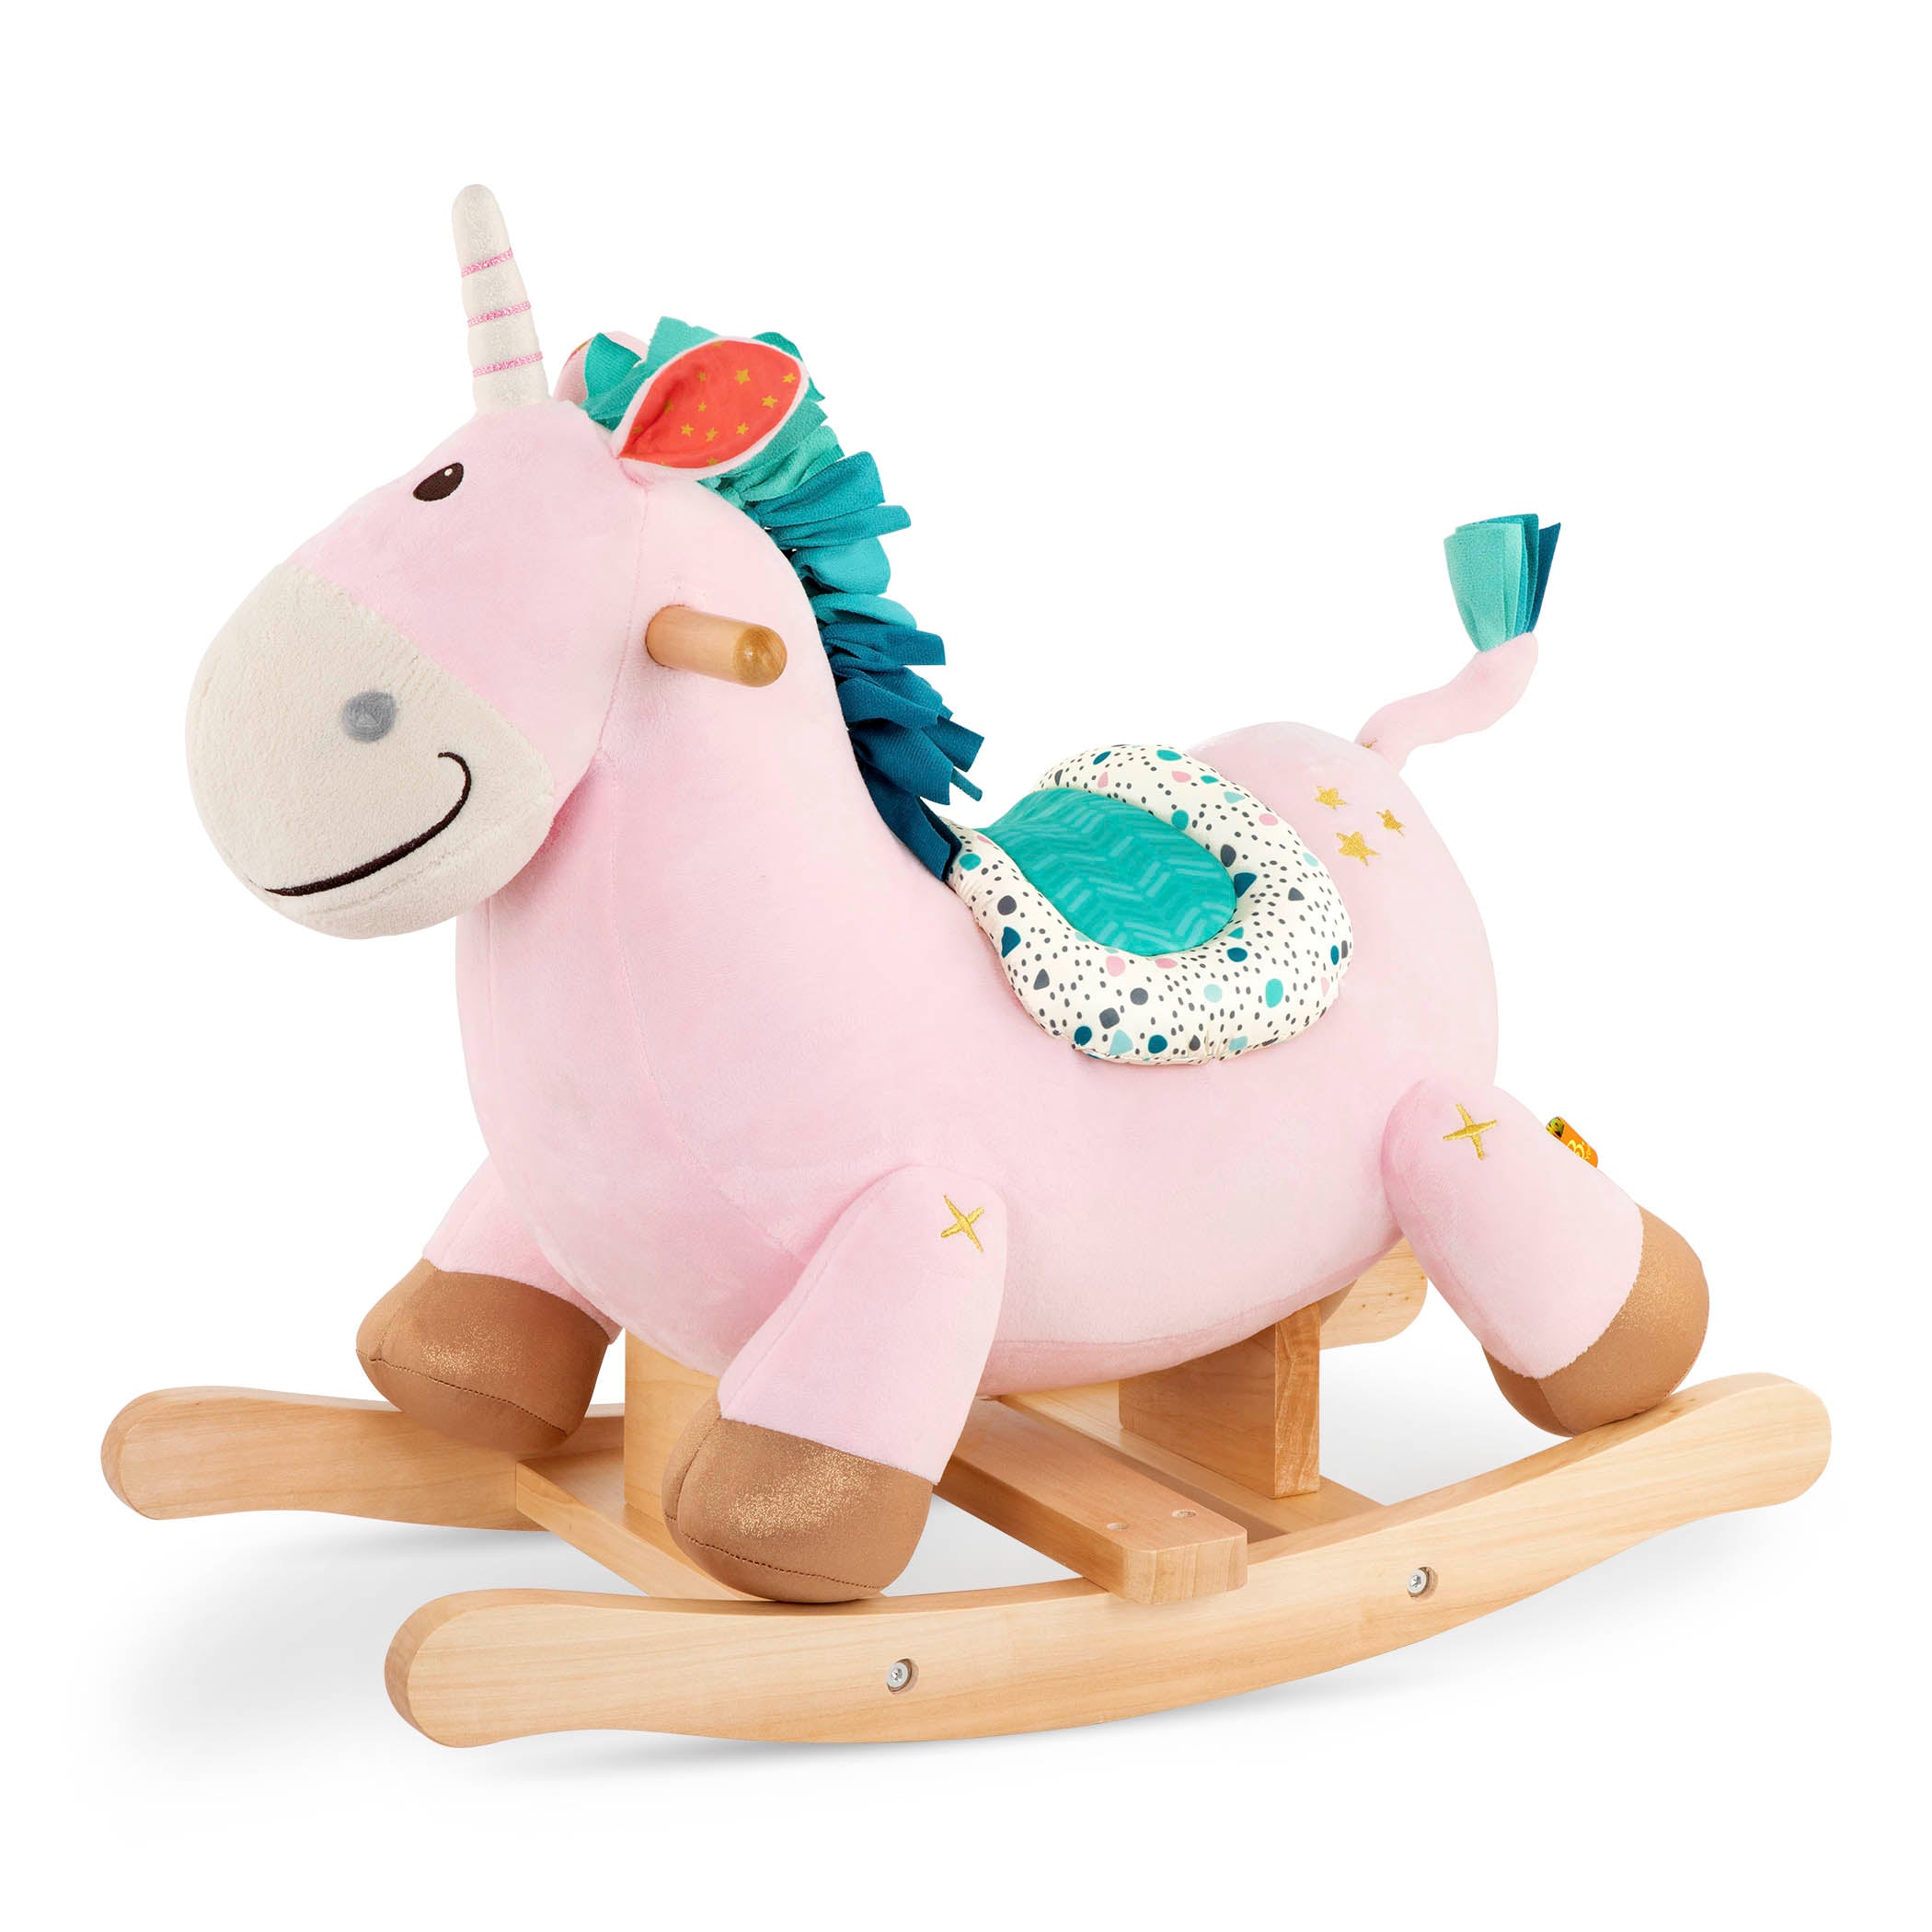 Unicorn rocking toy.